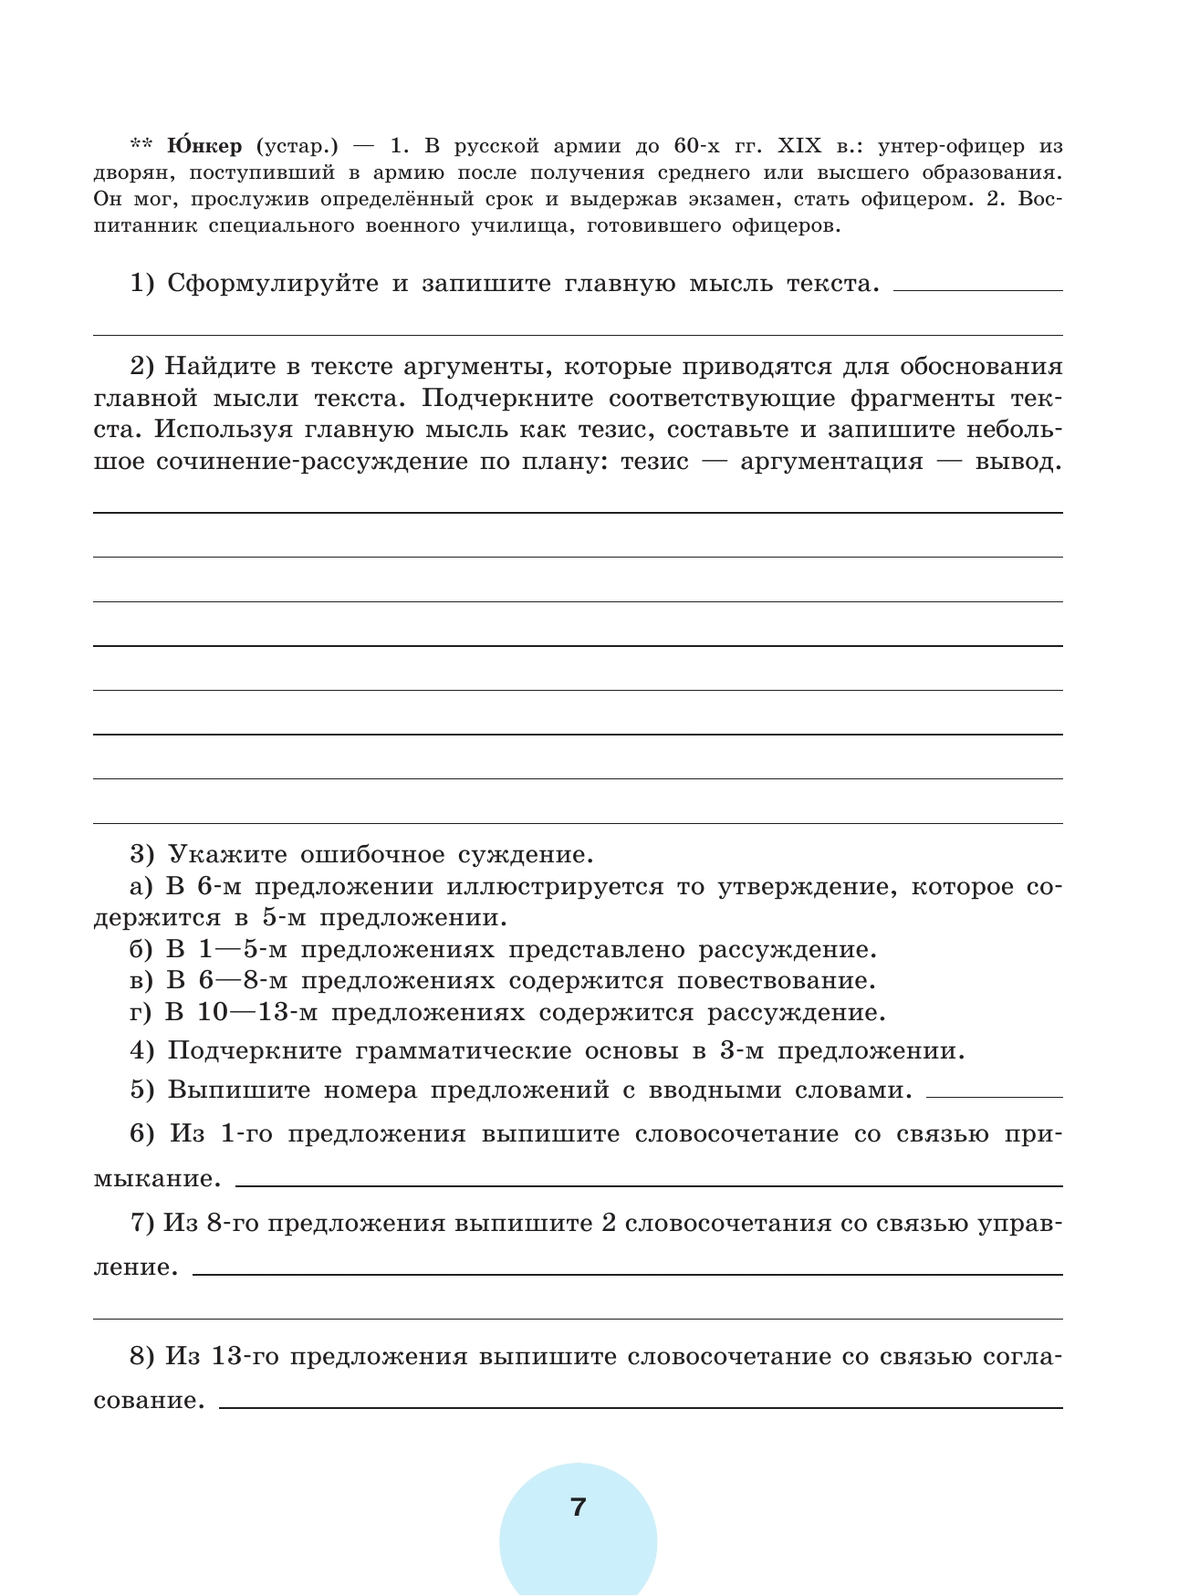 Русский язык. Рабочая тетрадь. 9 класс. В 2 ч. Часть 1 6